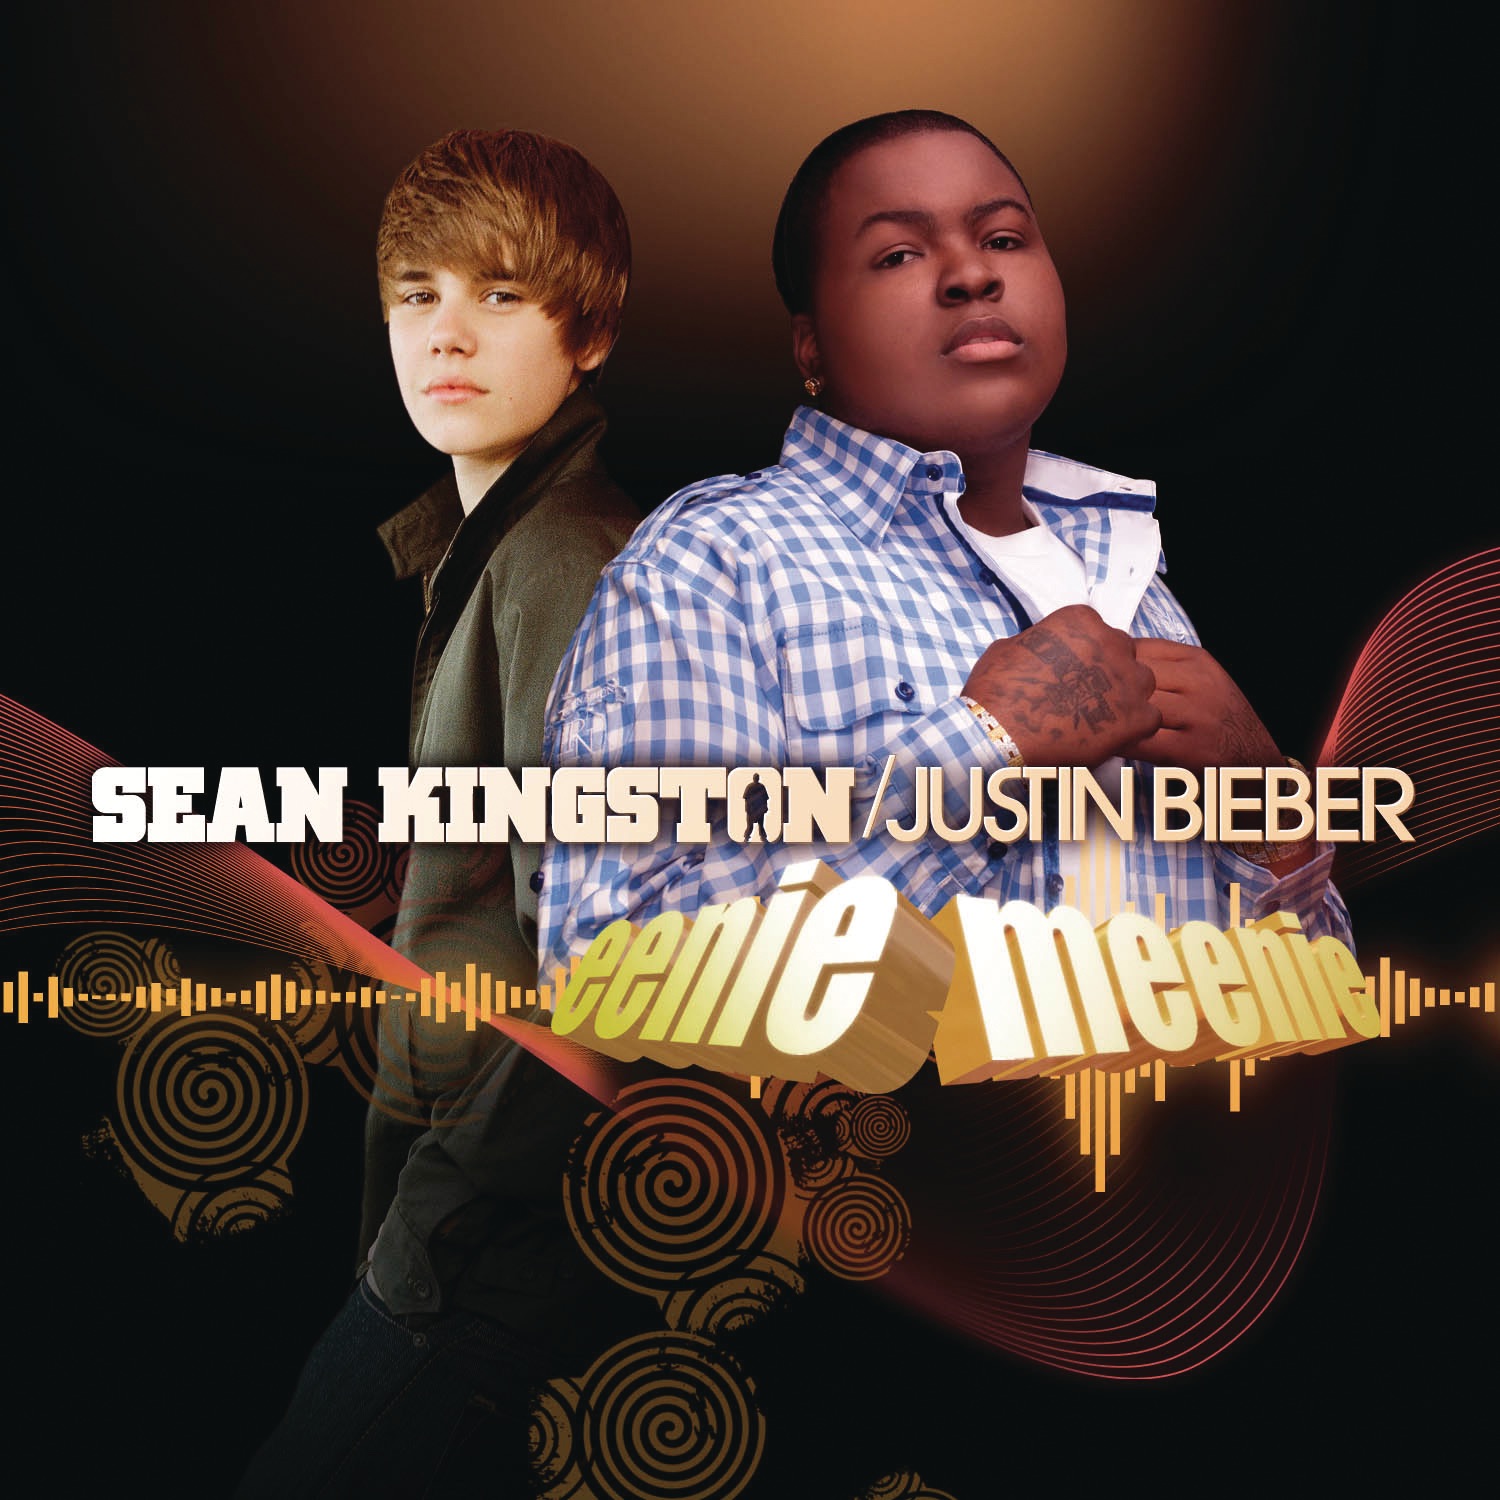 Sean Kingston & Justin Bieber — Eenie Meenie cover artwork